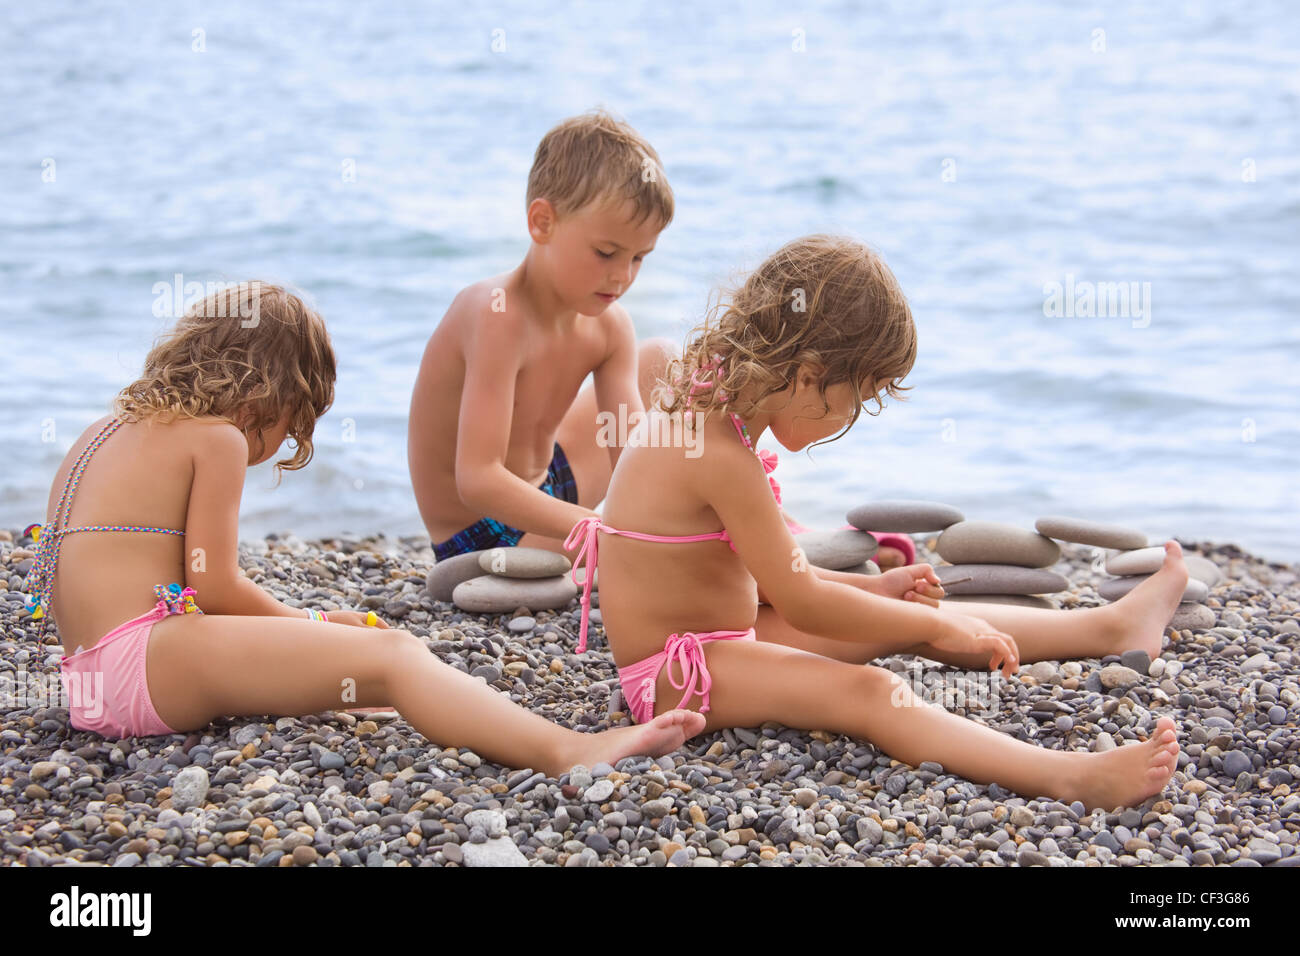 нудиский пляж с голыми детьми фото 113